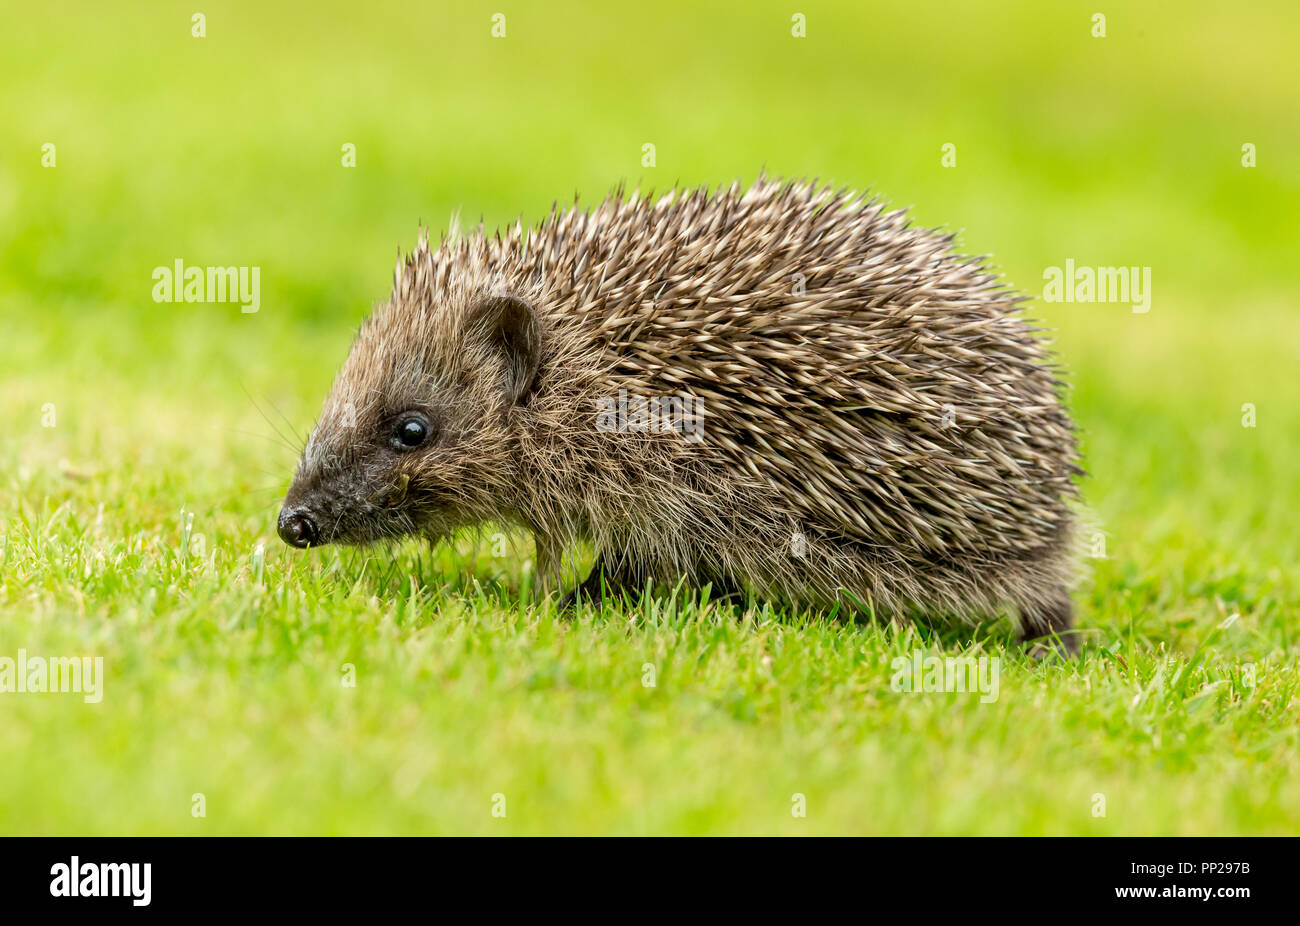 Riccio, giovani, selvatici, nativo, hedgehog europea, rivolto verso destra nel giardino naturale l'impostazione. Nome scientifico: Erinaceus europaeus. Orizzontale. Foto Stock